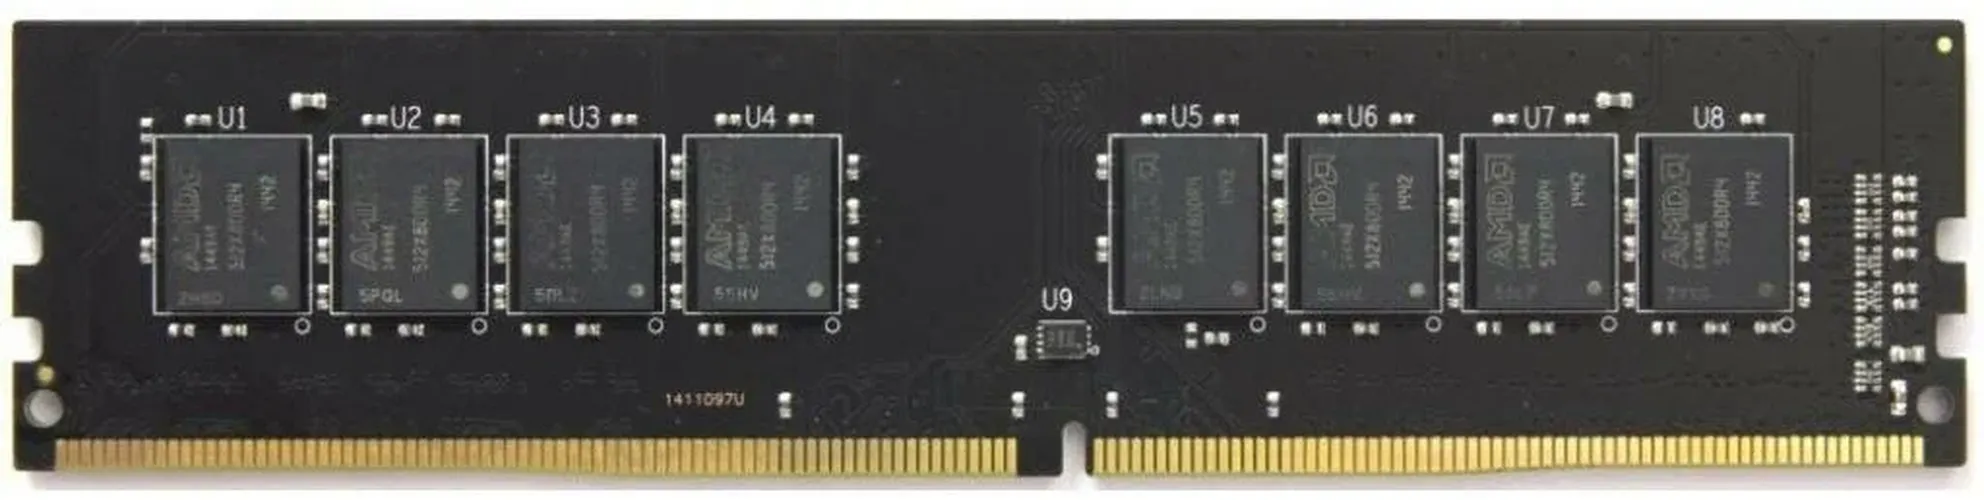 Оперативная память AMD Radeon R748G2400U2S DDR4 | 8 GB |2400 МГц, купить недорого